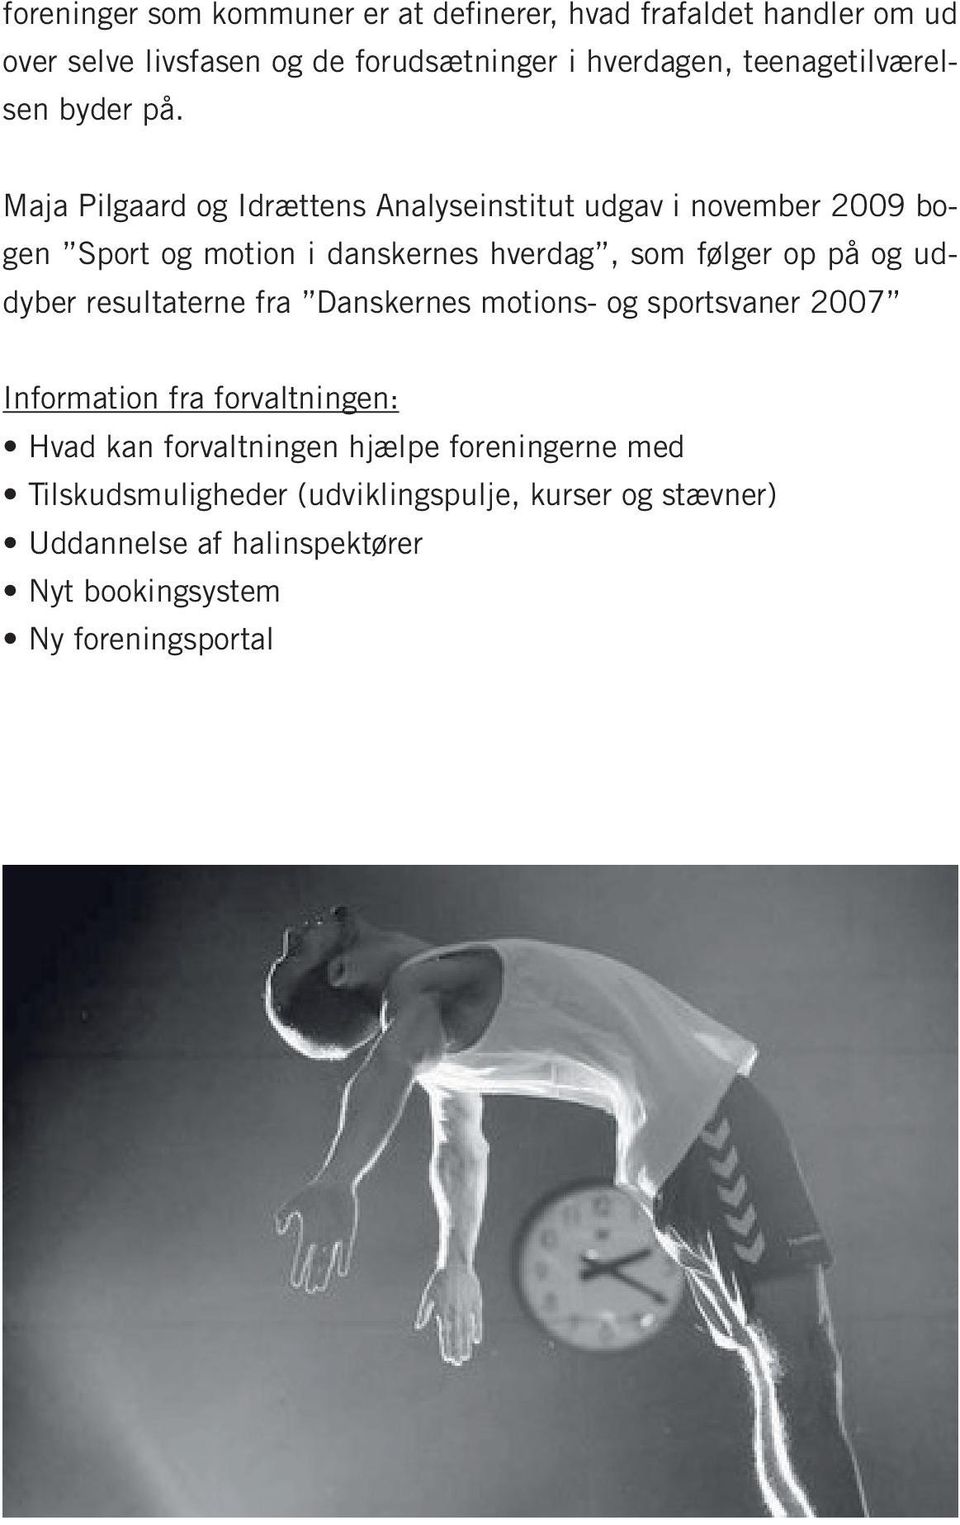 Maja Pilgaard og Idrættens Analyseinstitut udgav i november 2009 bogen Sport og motion i danskernes hverdag, som følger op på og uddyber